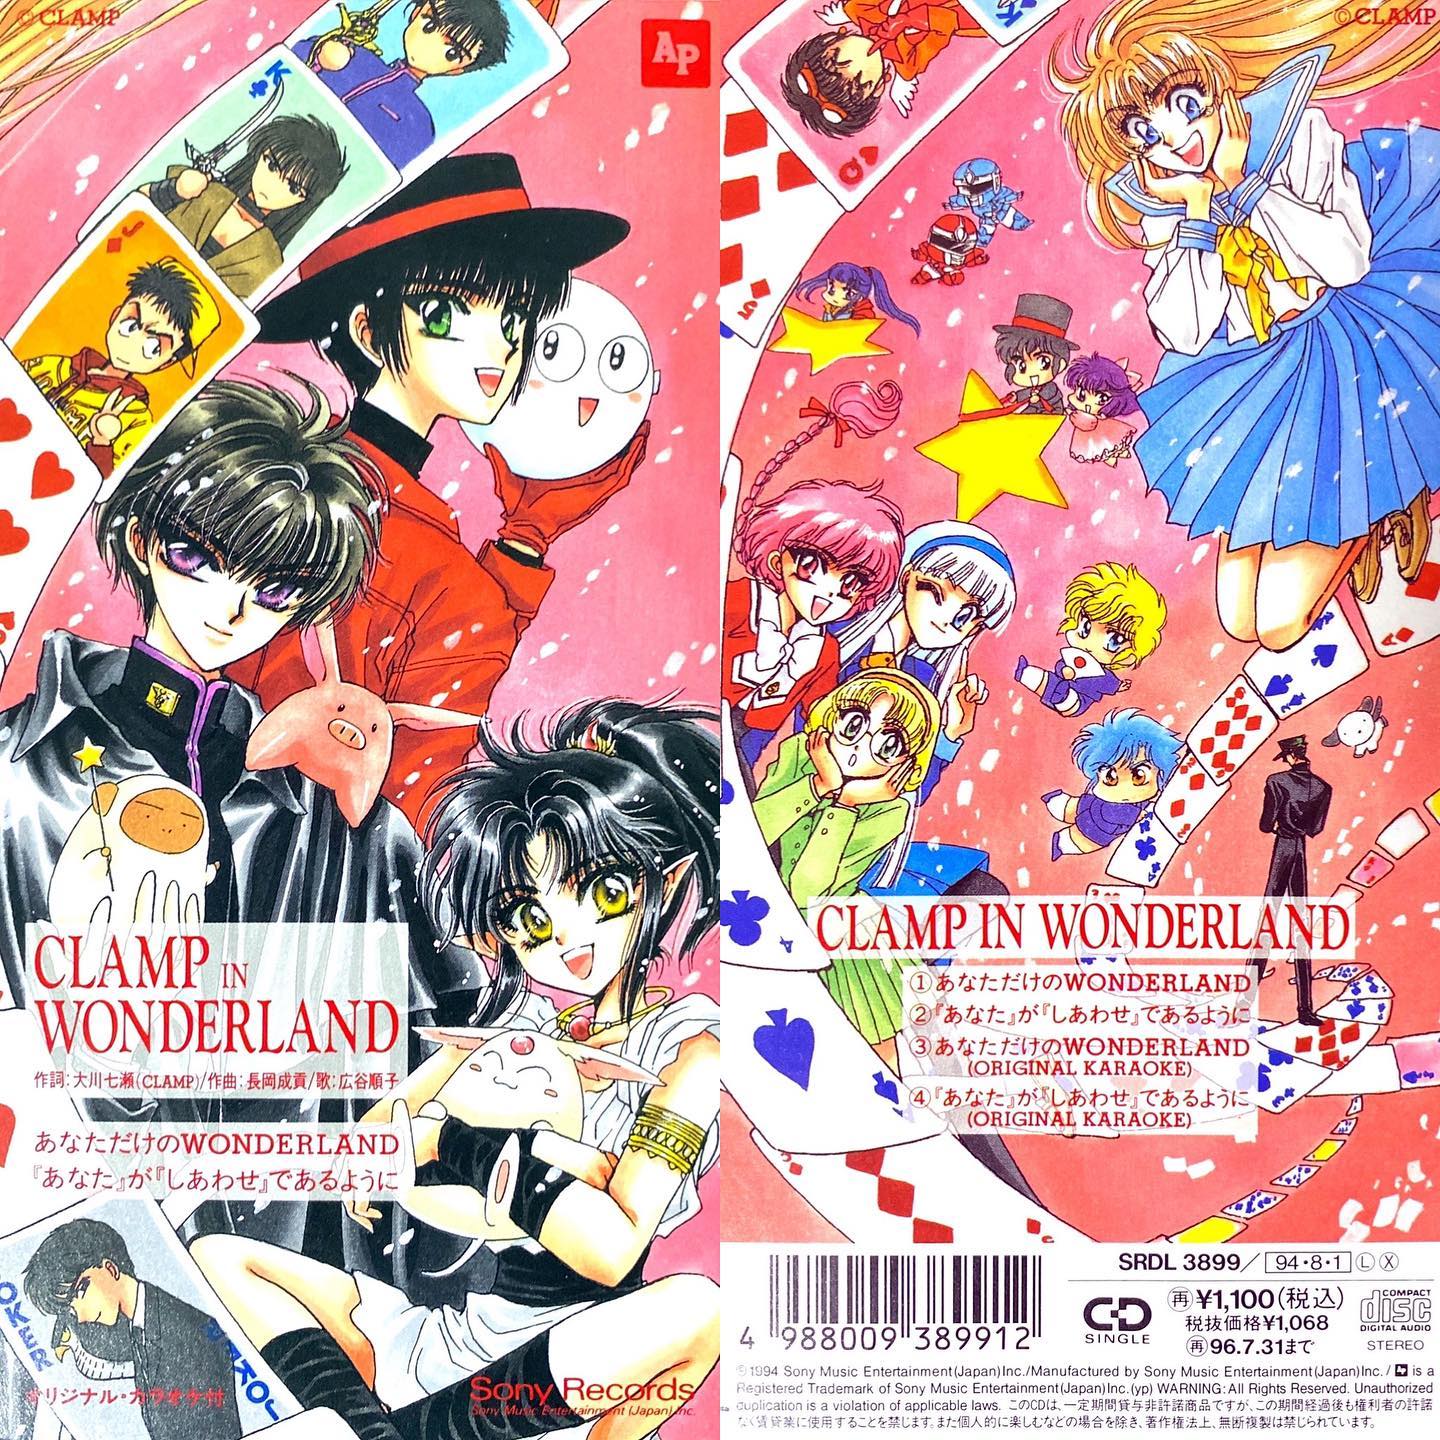 あなただけのWONDERLAND/広谷順子OVA CLAMP IN WONDERLAND 1作目OP(1994年)#センチメンタルグルーヴ#sentimental_groove #アニメ #アニソン #8cmCD #短冊CD#広谷順子 #CLAMP #OVA #JPOP #anime #animesong